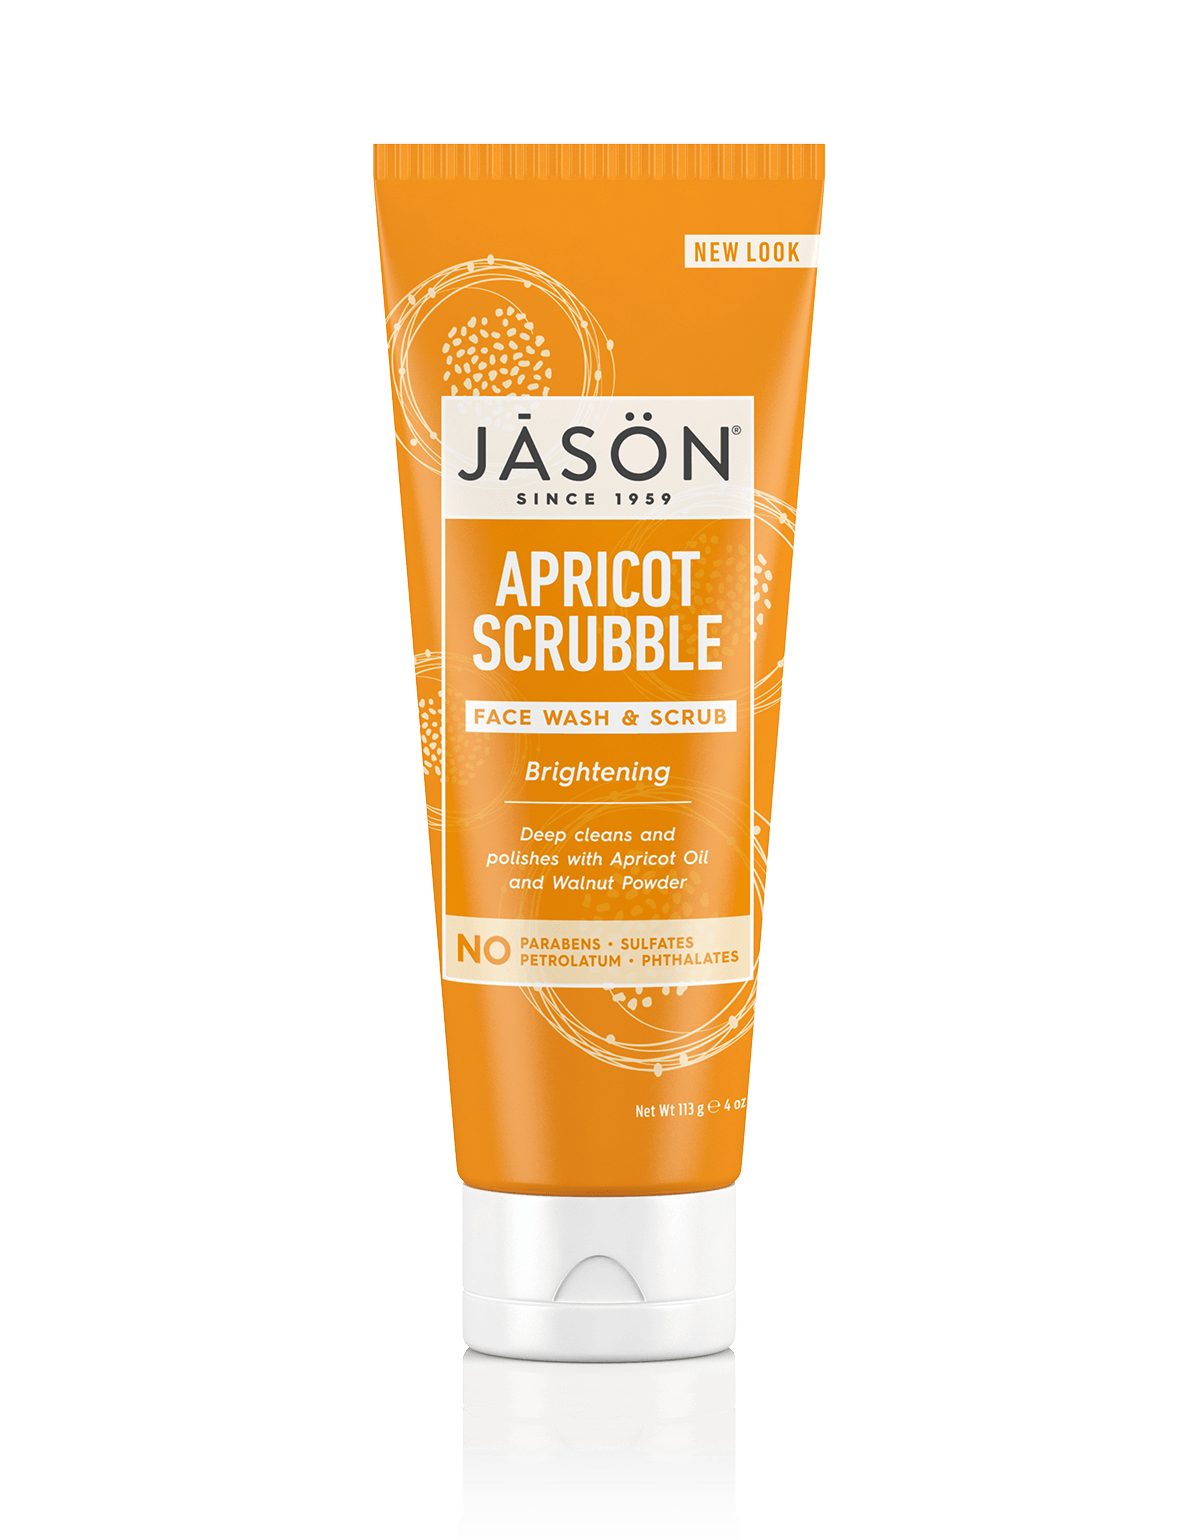 Brightening Apricot Scrubble Face Wash & Scrub